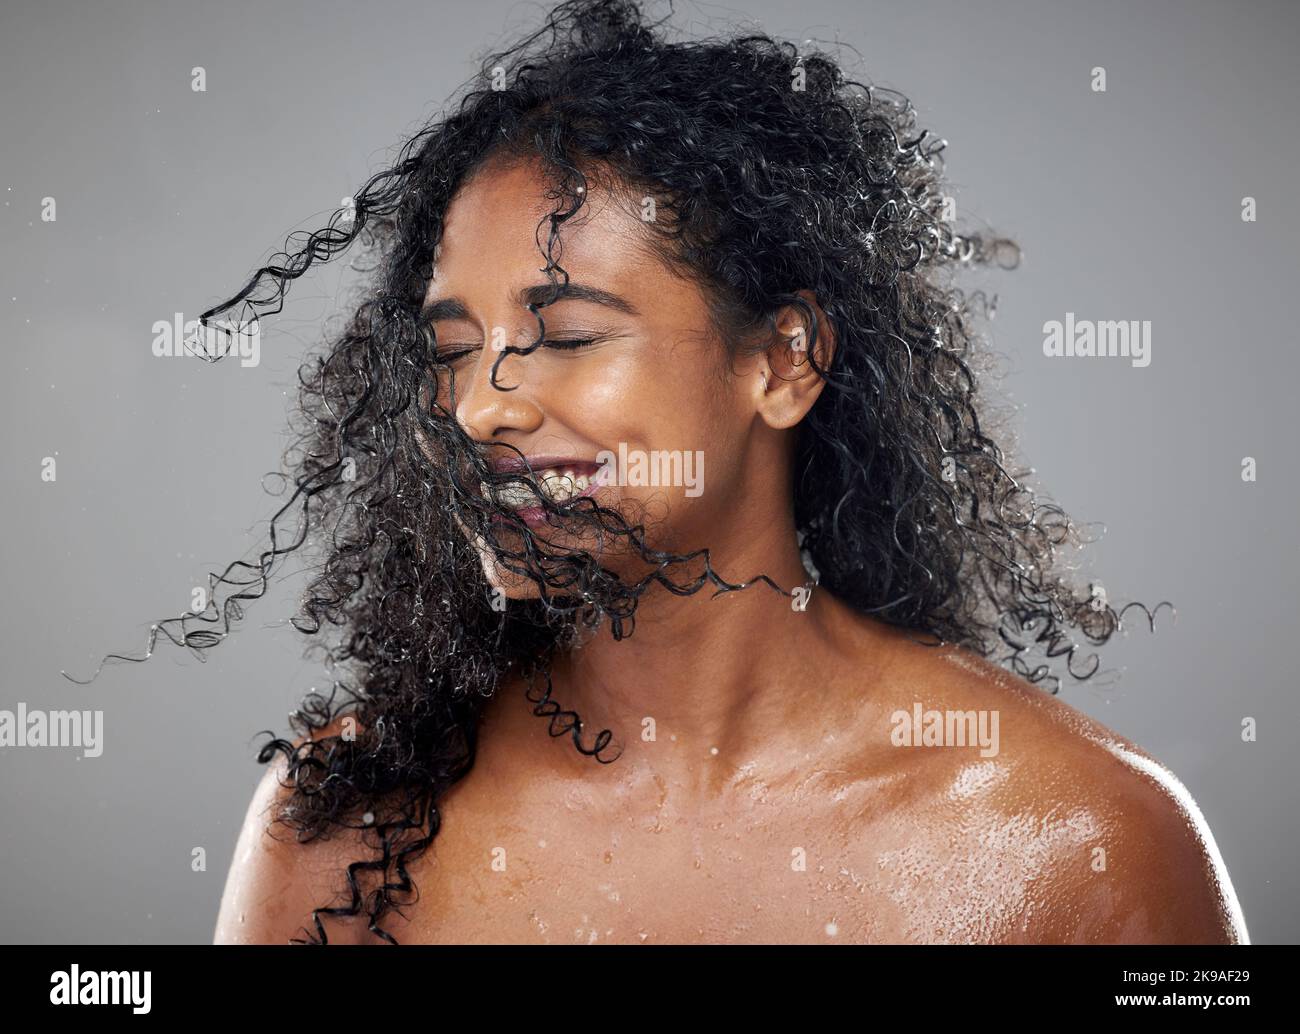 Santé, cheveux humides et soin de la peau beauté d'une femme noire avec produit cosmétique mockup à hydrate, nourrir et hydrater les cheveux africains. Nettoyer la peau Banque D'Images